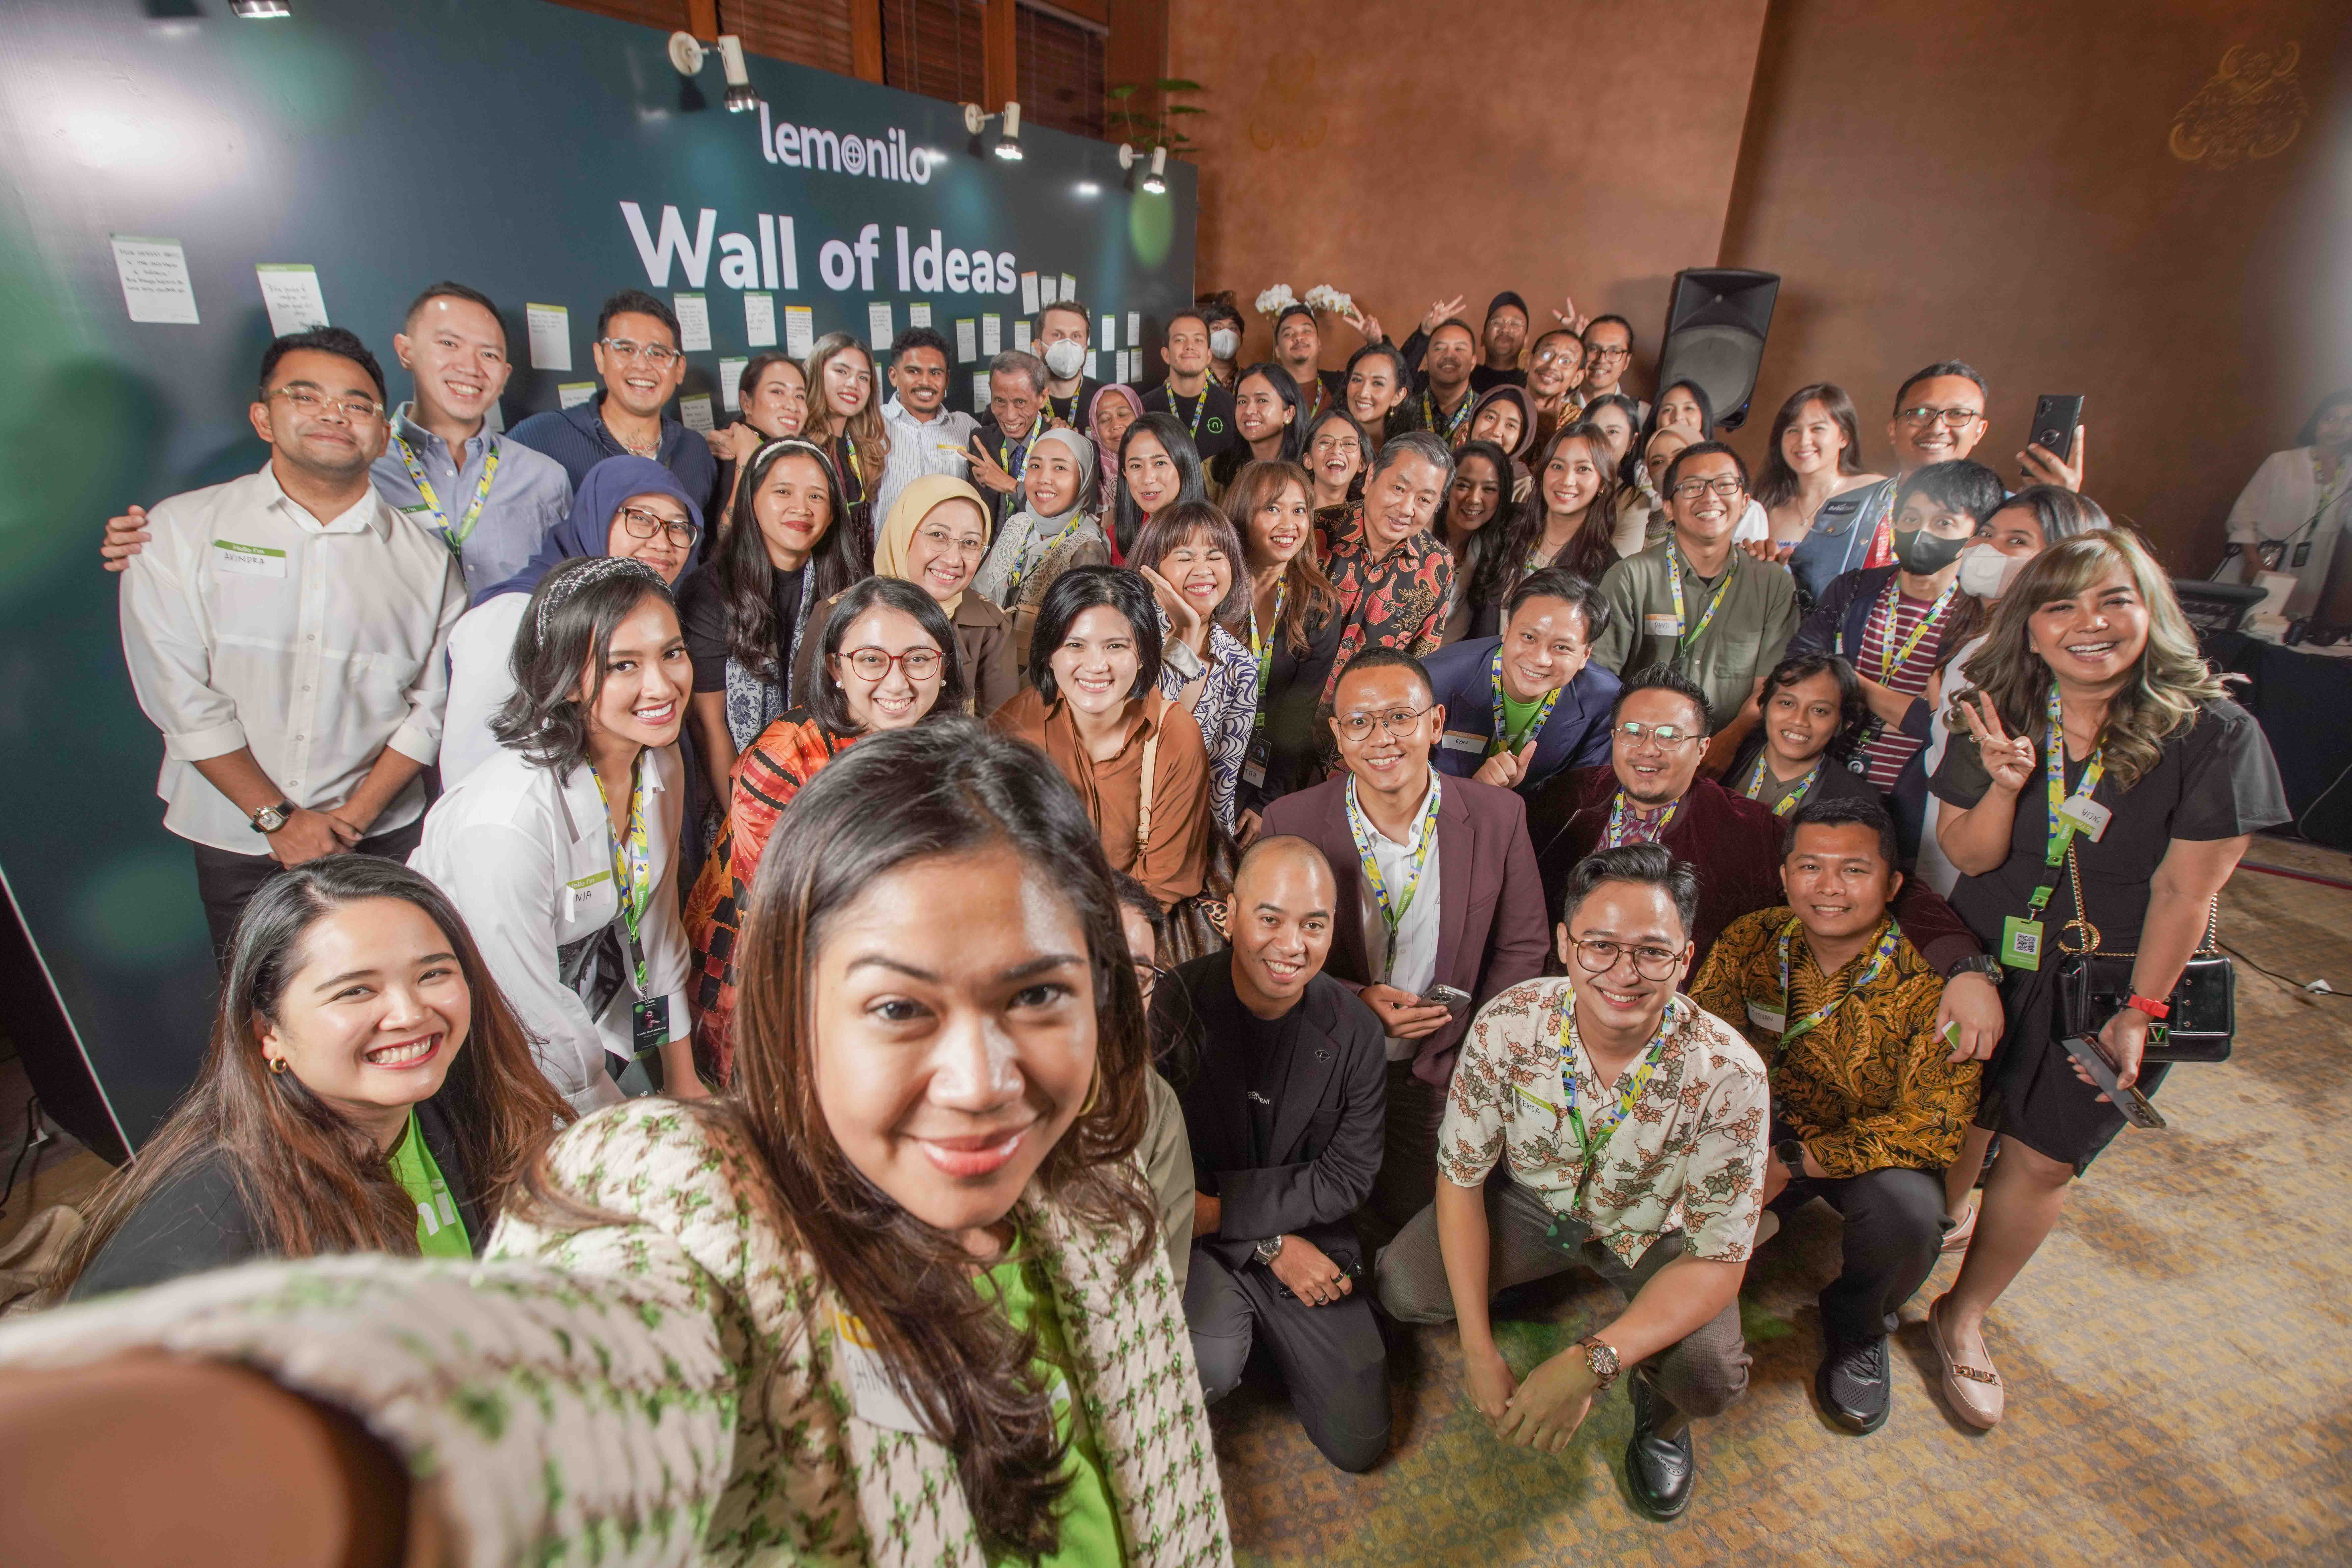 Wujudkan Indonesia Lebih Sehat, Lemonilo Gandeng Penggerak Perubahan